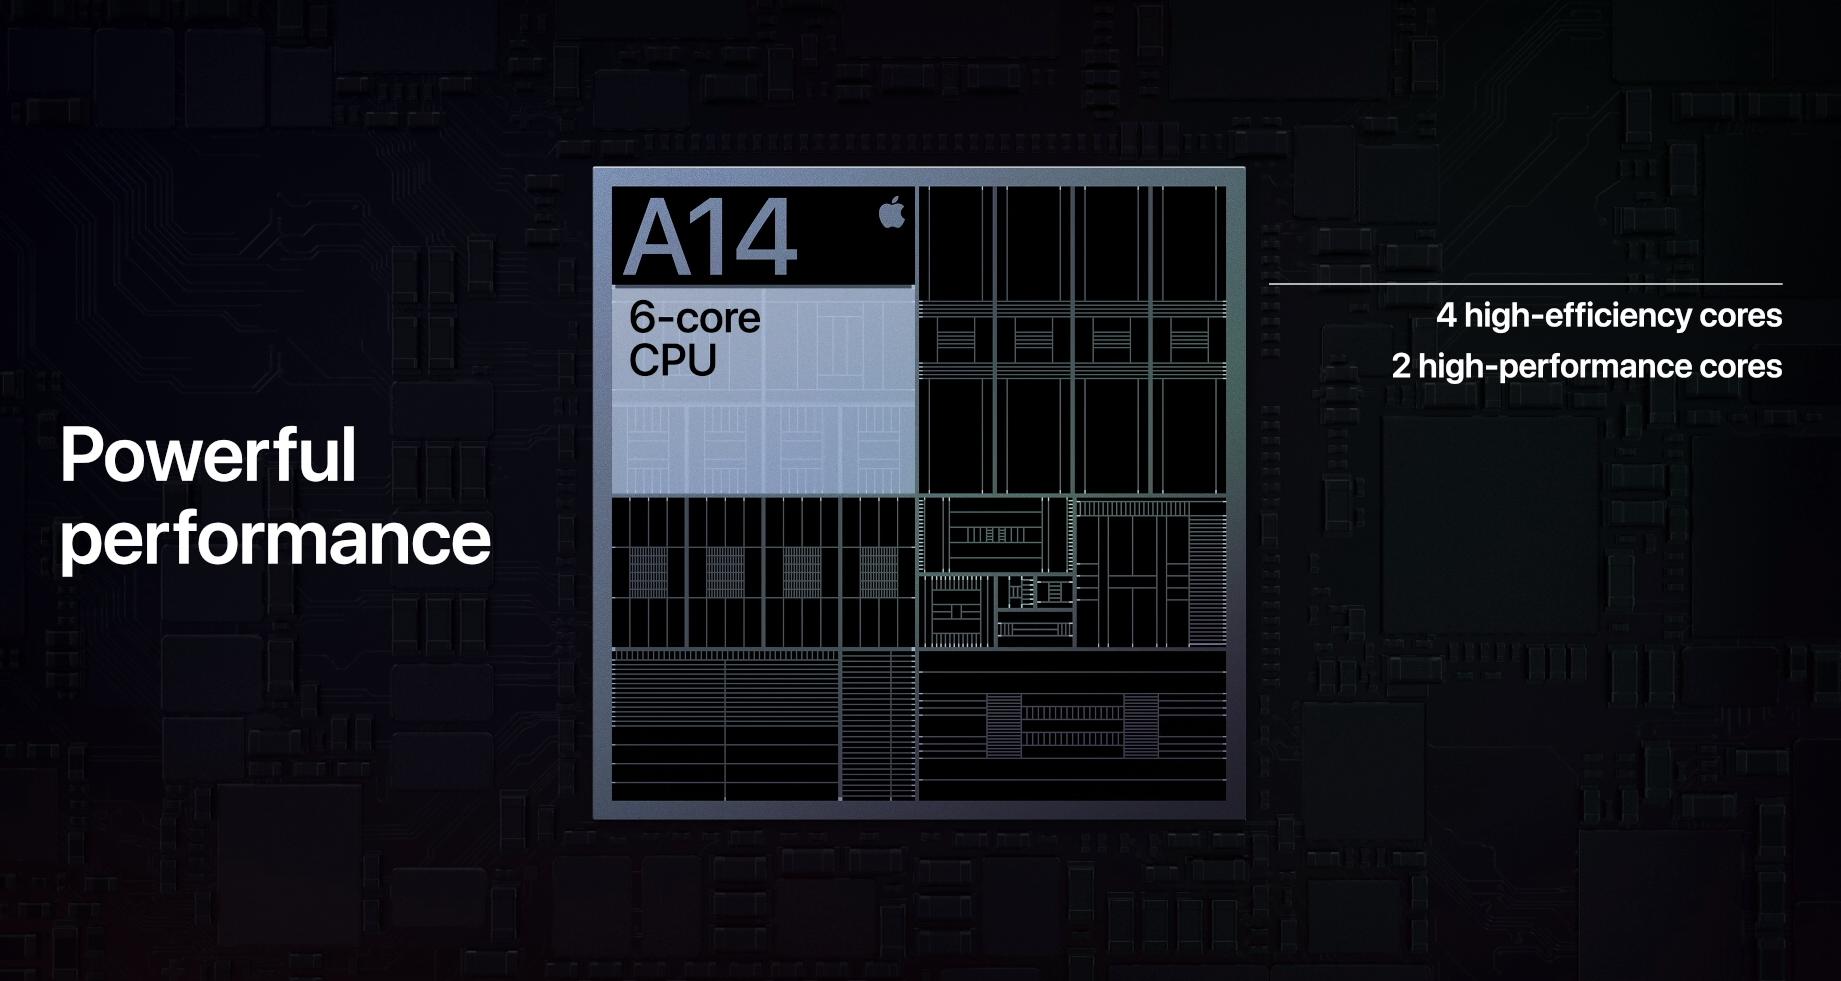 A14-prosessoren er laget på en svært avansert 5 nm-prosess. 